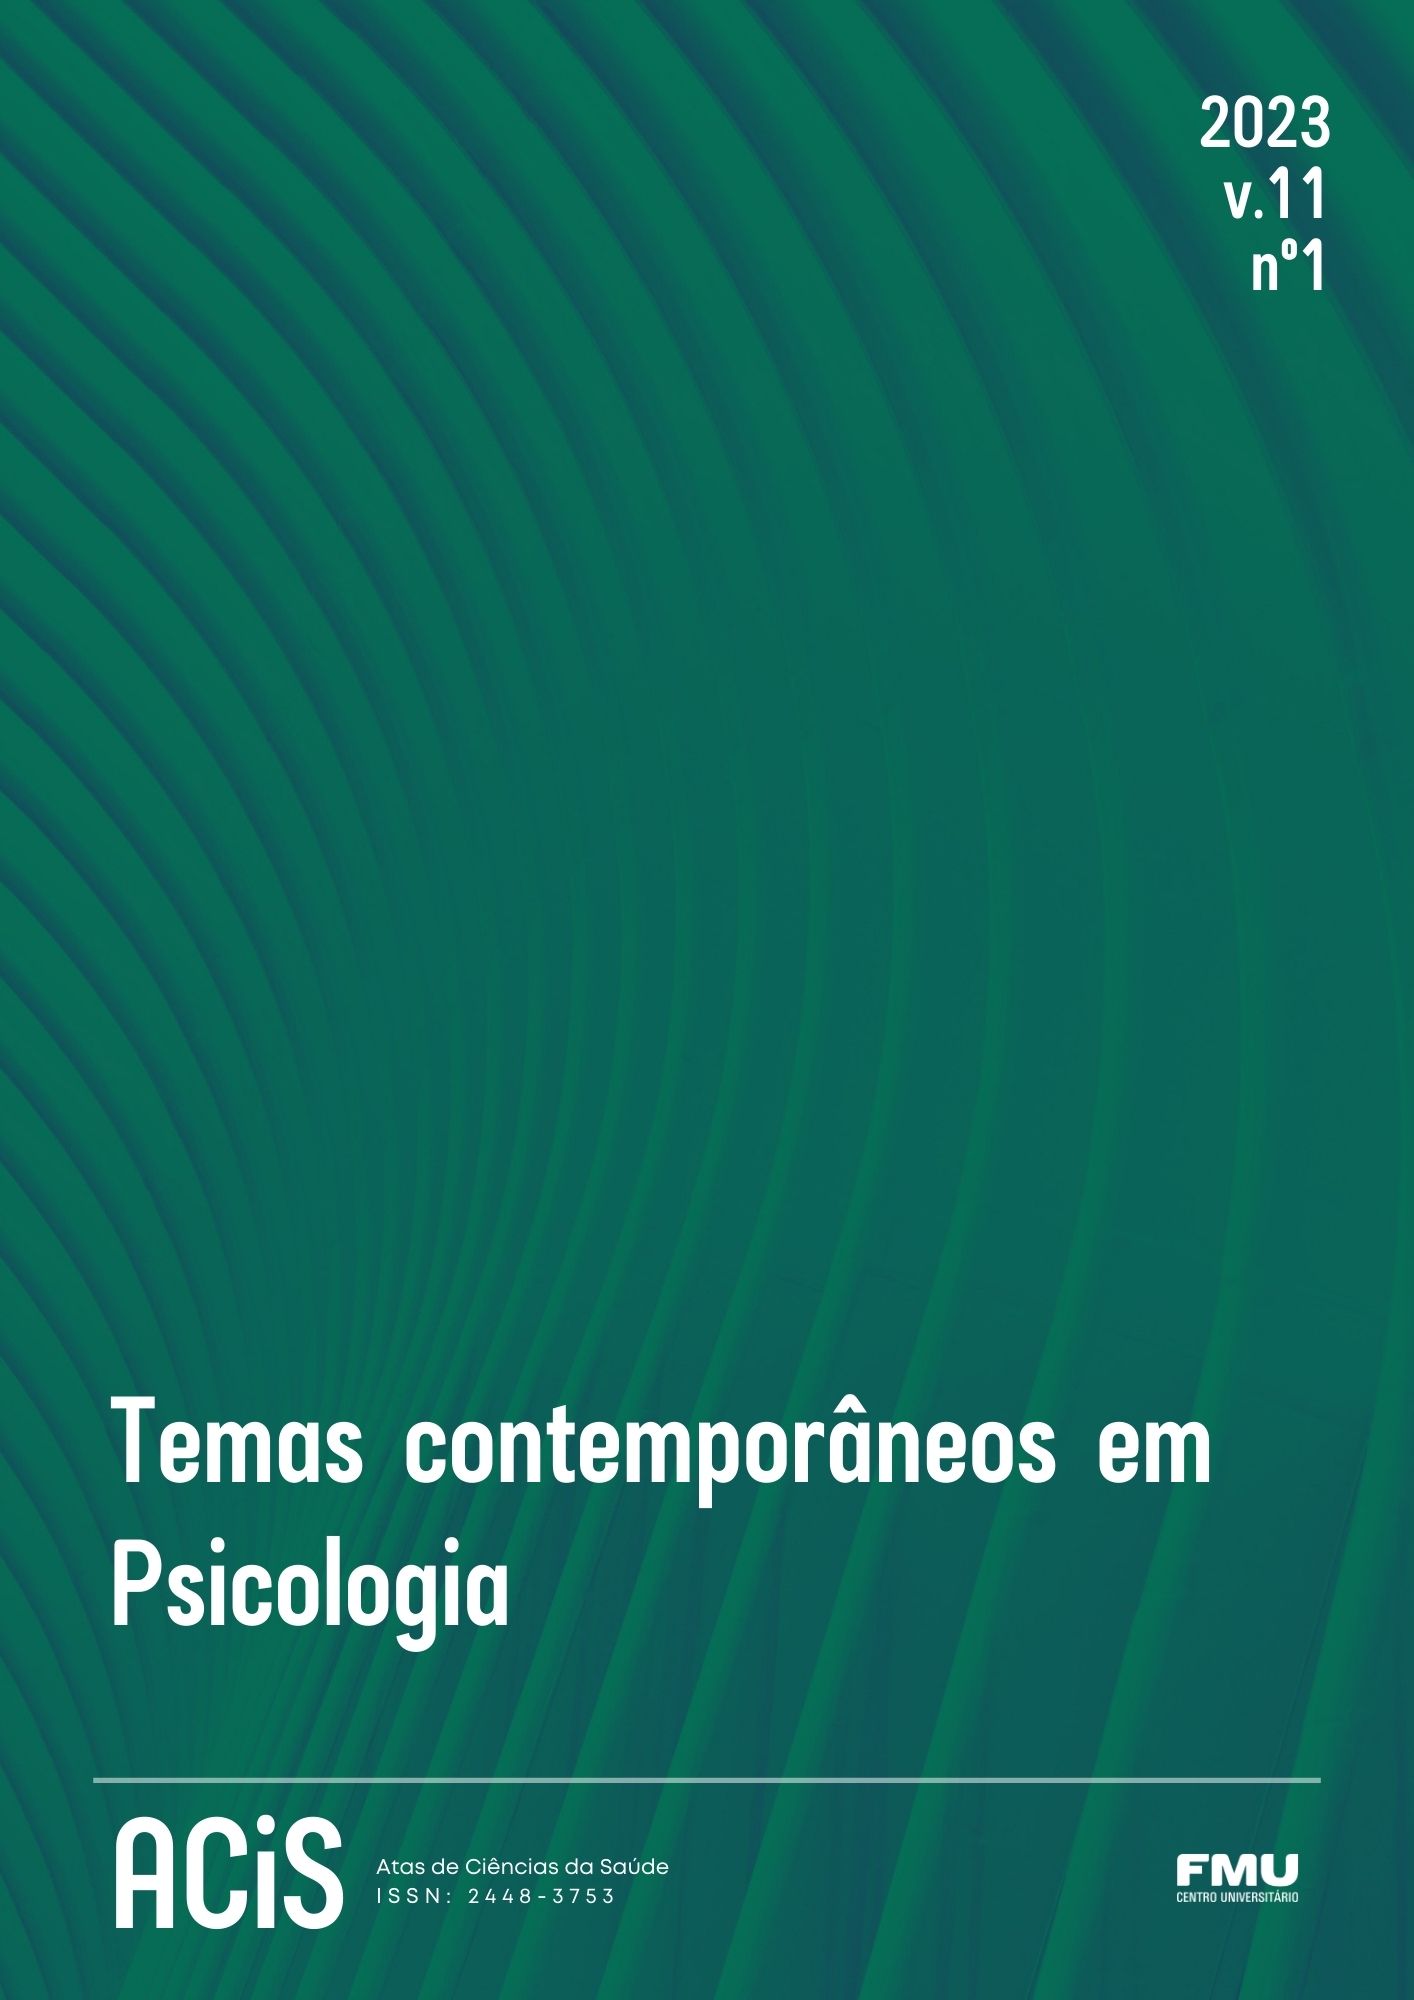 					View Vol. 11 No. 1 (2023): Temas contemporâneos em Psicologia
				